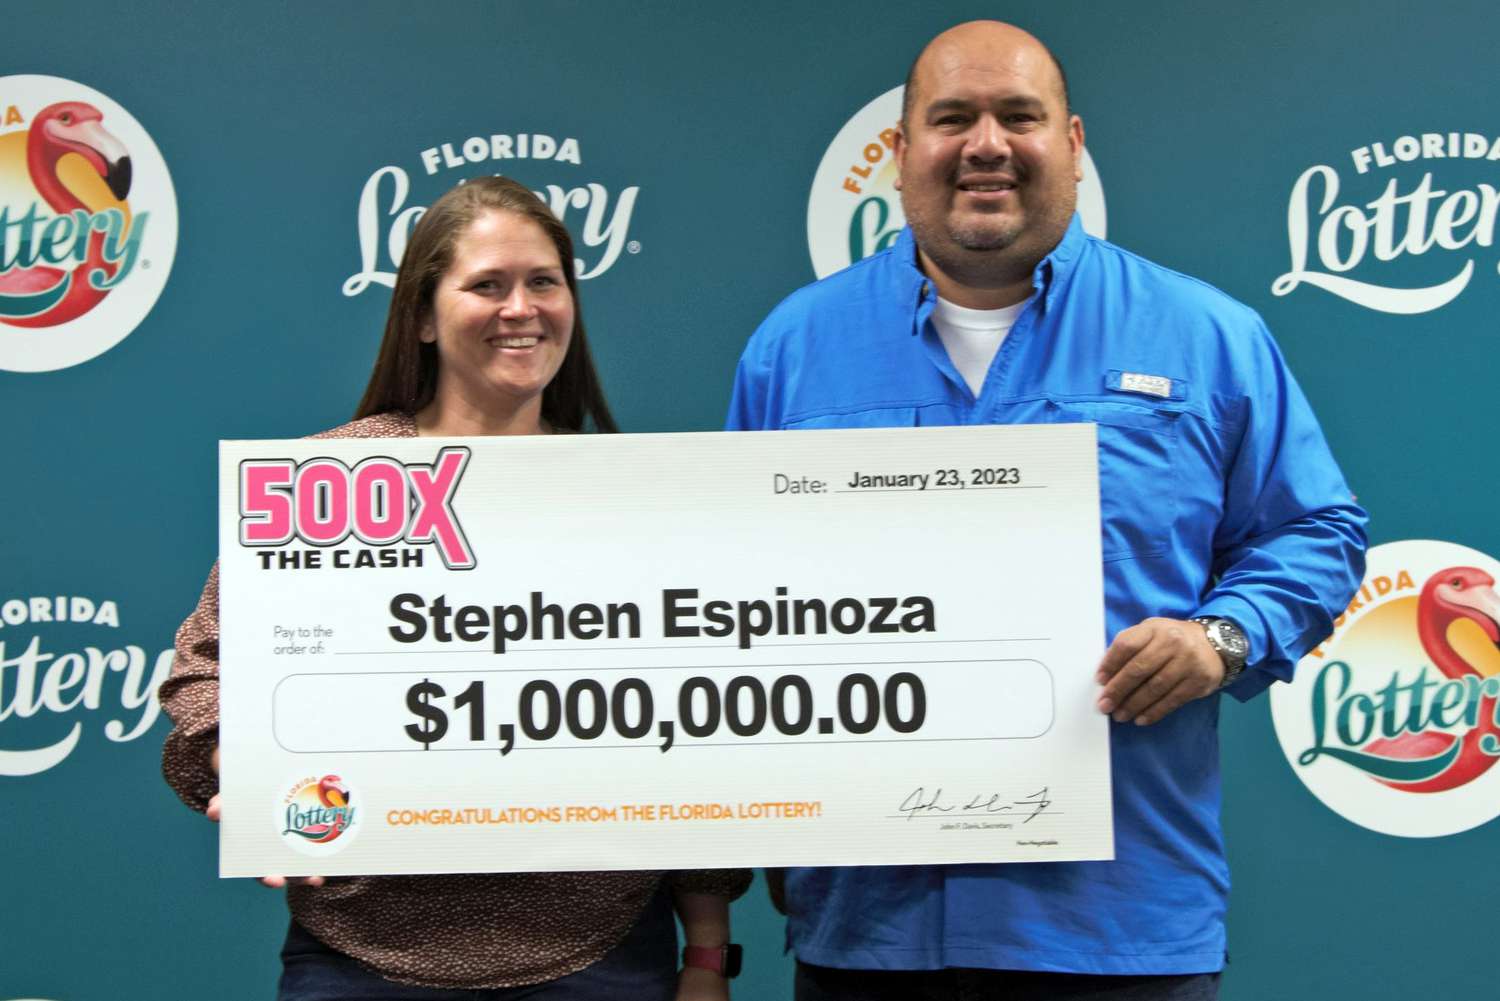 Mann aus Florida gewinnt Lotteriepreis in Höhe von 1 Million US-Dollar, nachdem ein Fremder ihn an einem Ticketautomaten geschnitten hat